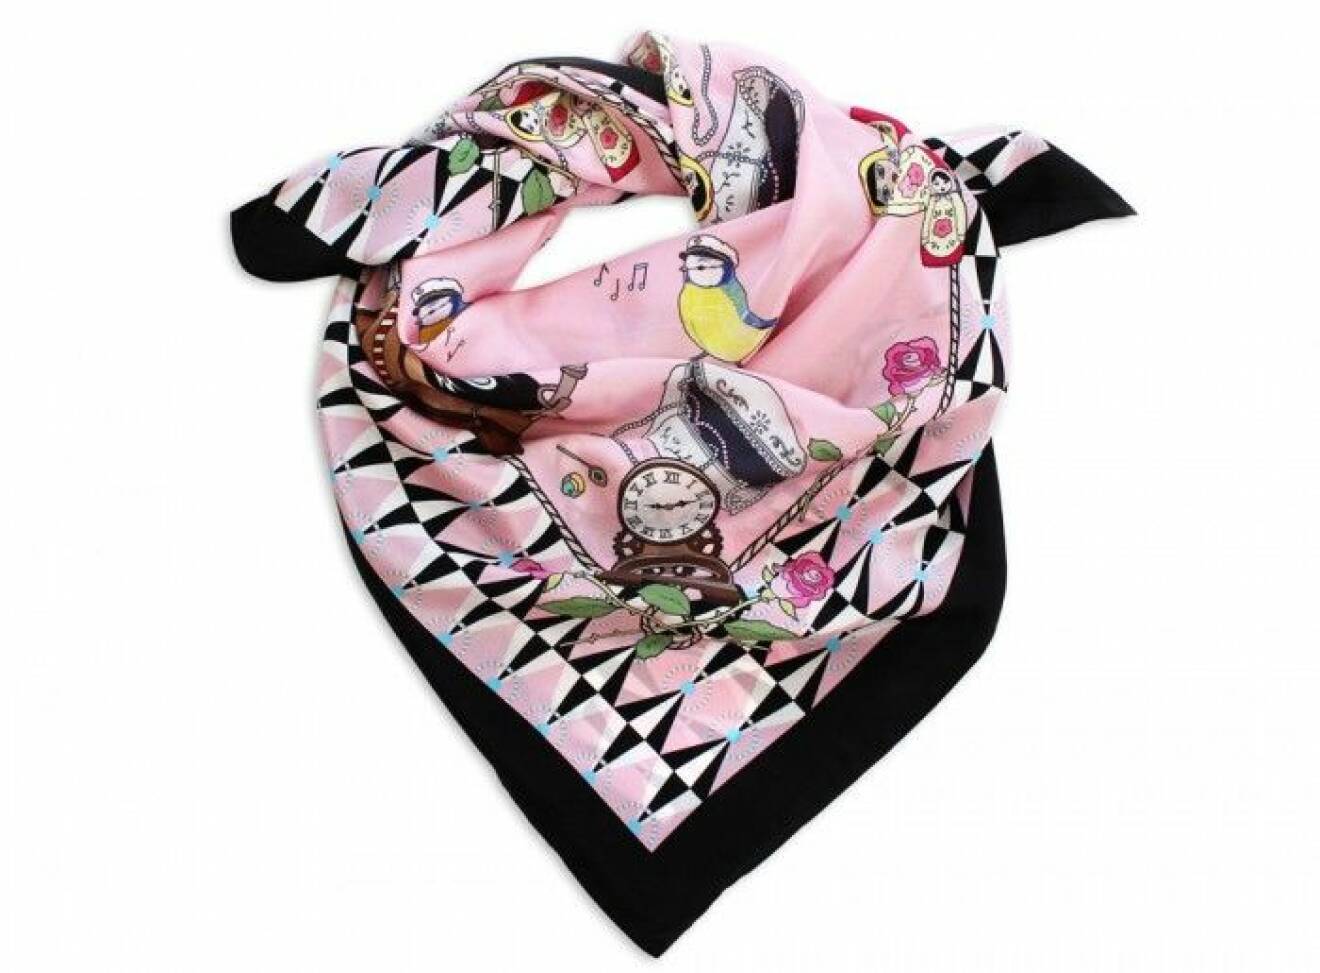 Handfållad didenscarf med handritat digitaltryck, 90x90 cm, 1 200 kr, Lisa Edoff/www.lisaedoff.se